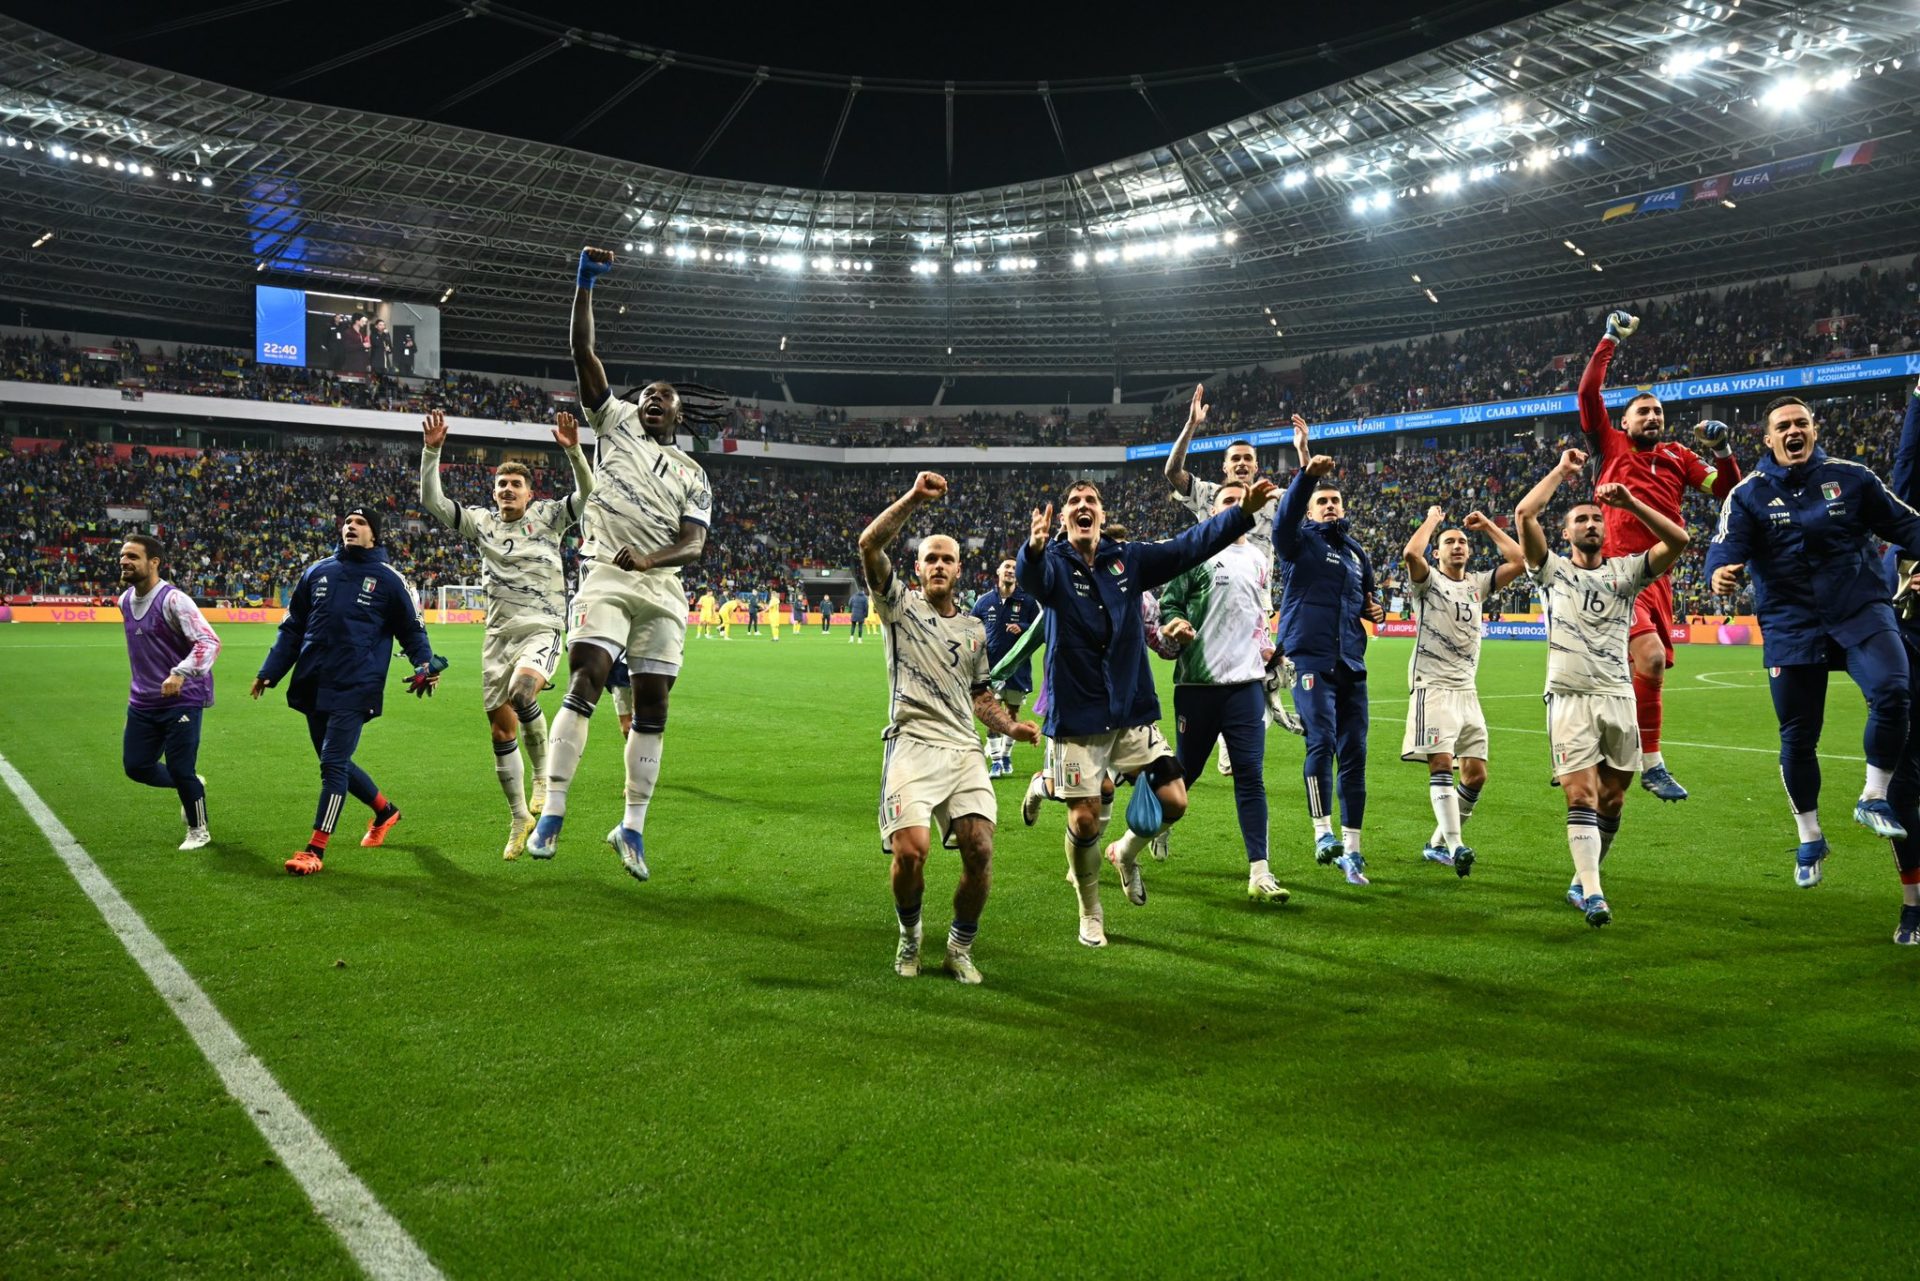 Italianos comemoram conquista após jogo - Foto: Reprodução/X @azzurri